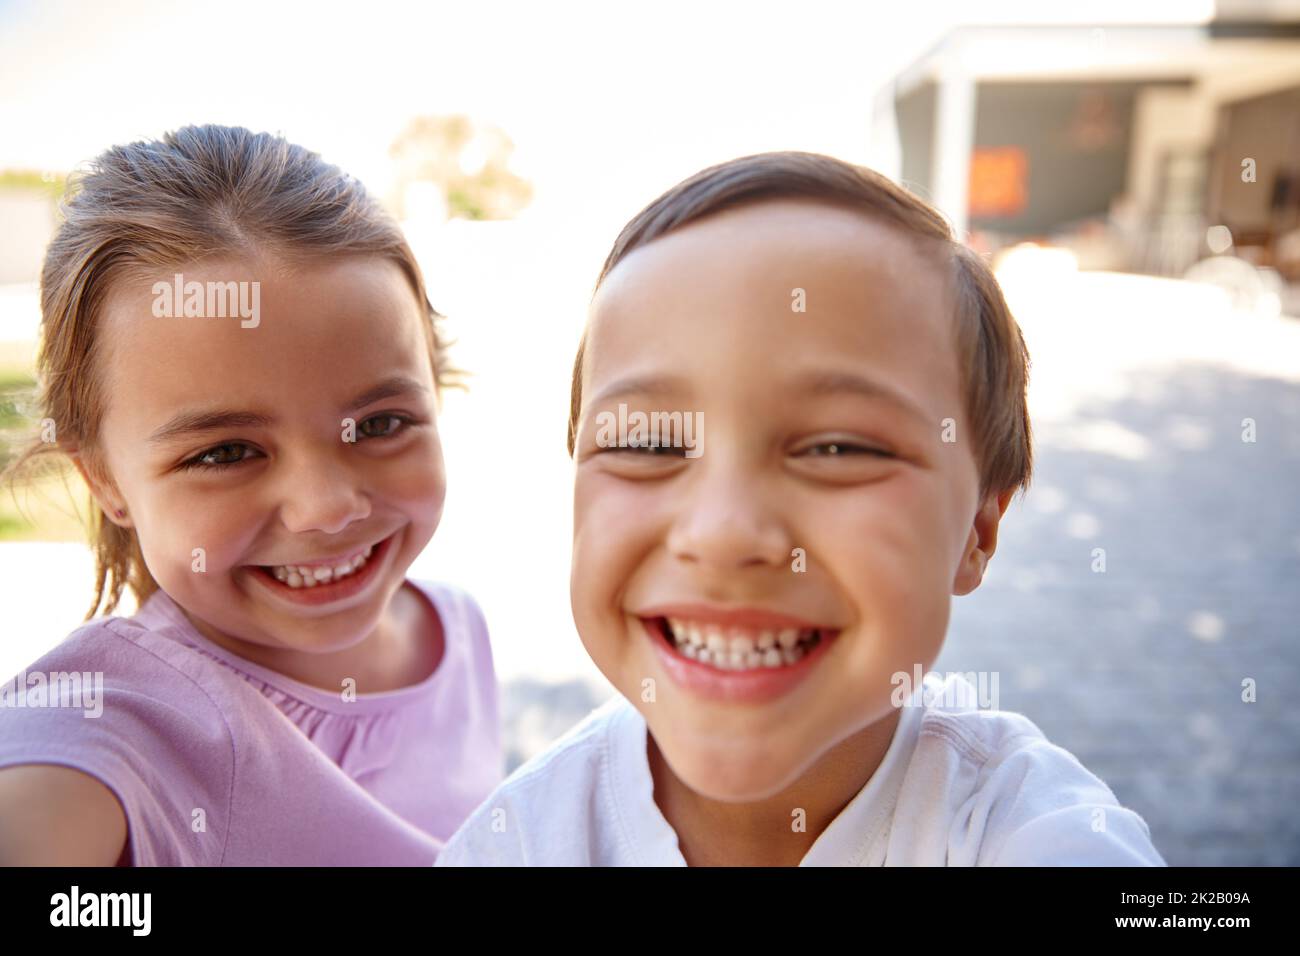 Sie waren so aufgeregt. Zwei niedliche kleine Kinder lächeln und lachen zusammen. Stockfoto